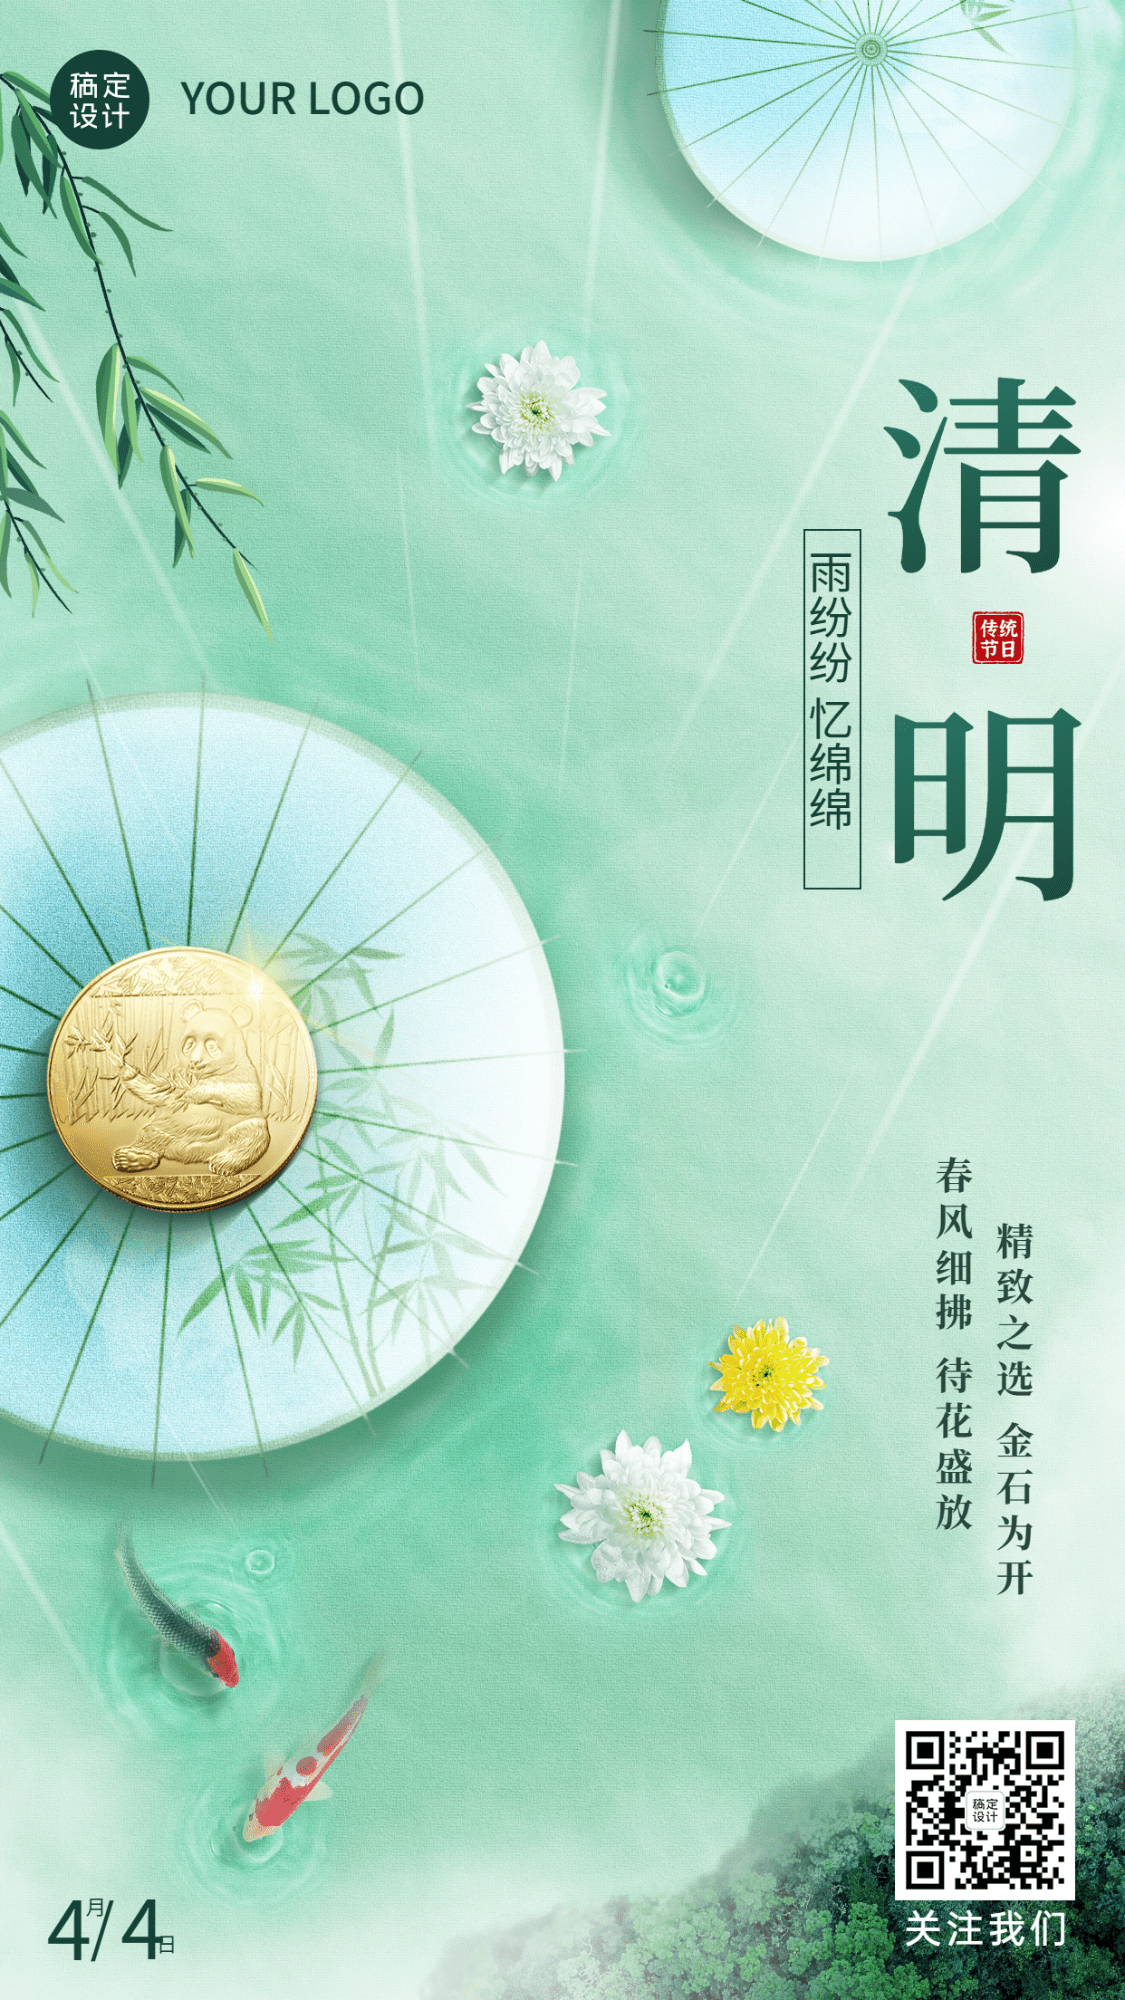 清明节金融保险节日祝福清新中国风创意海报预览效果